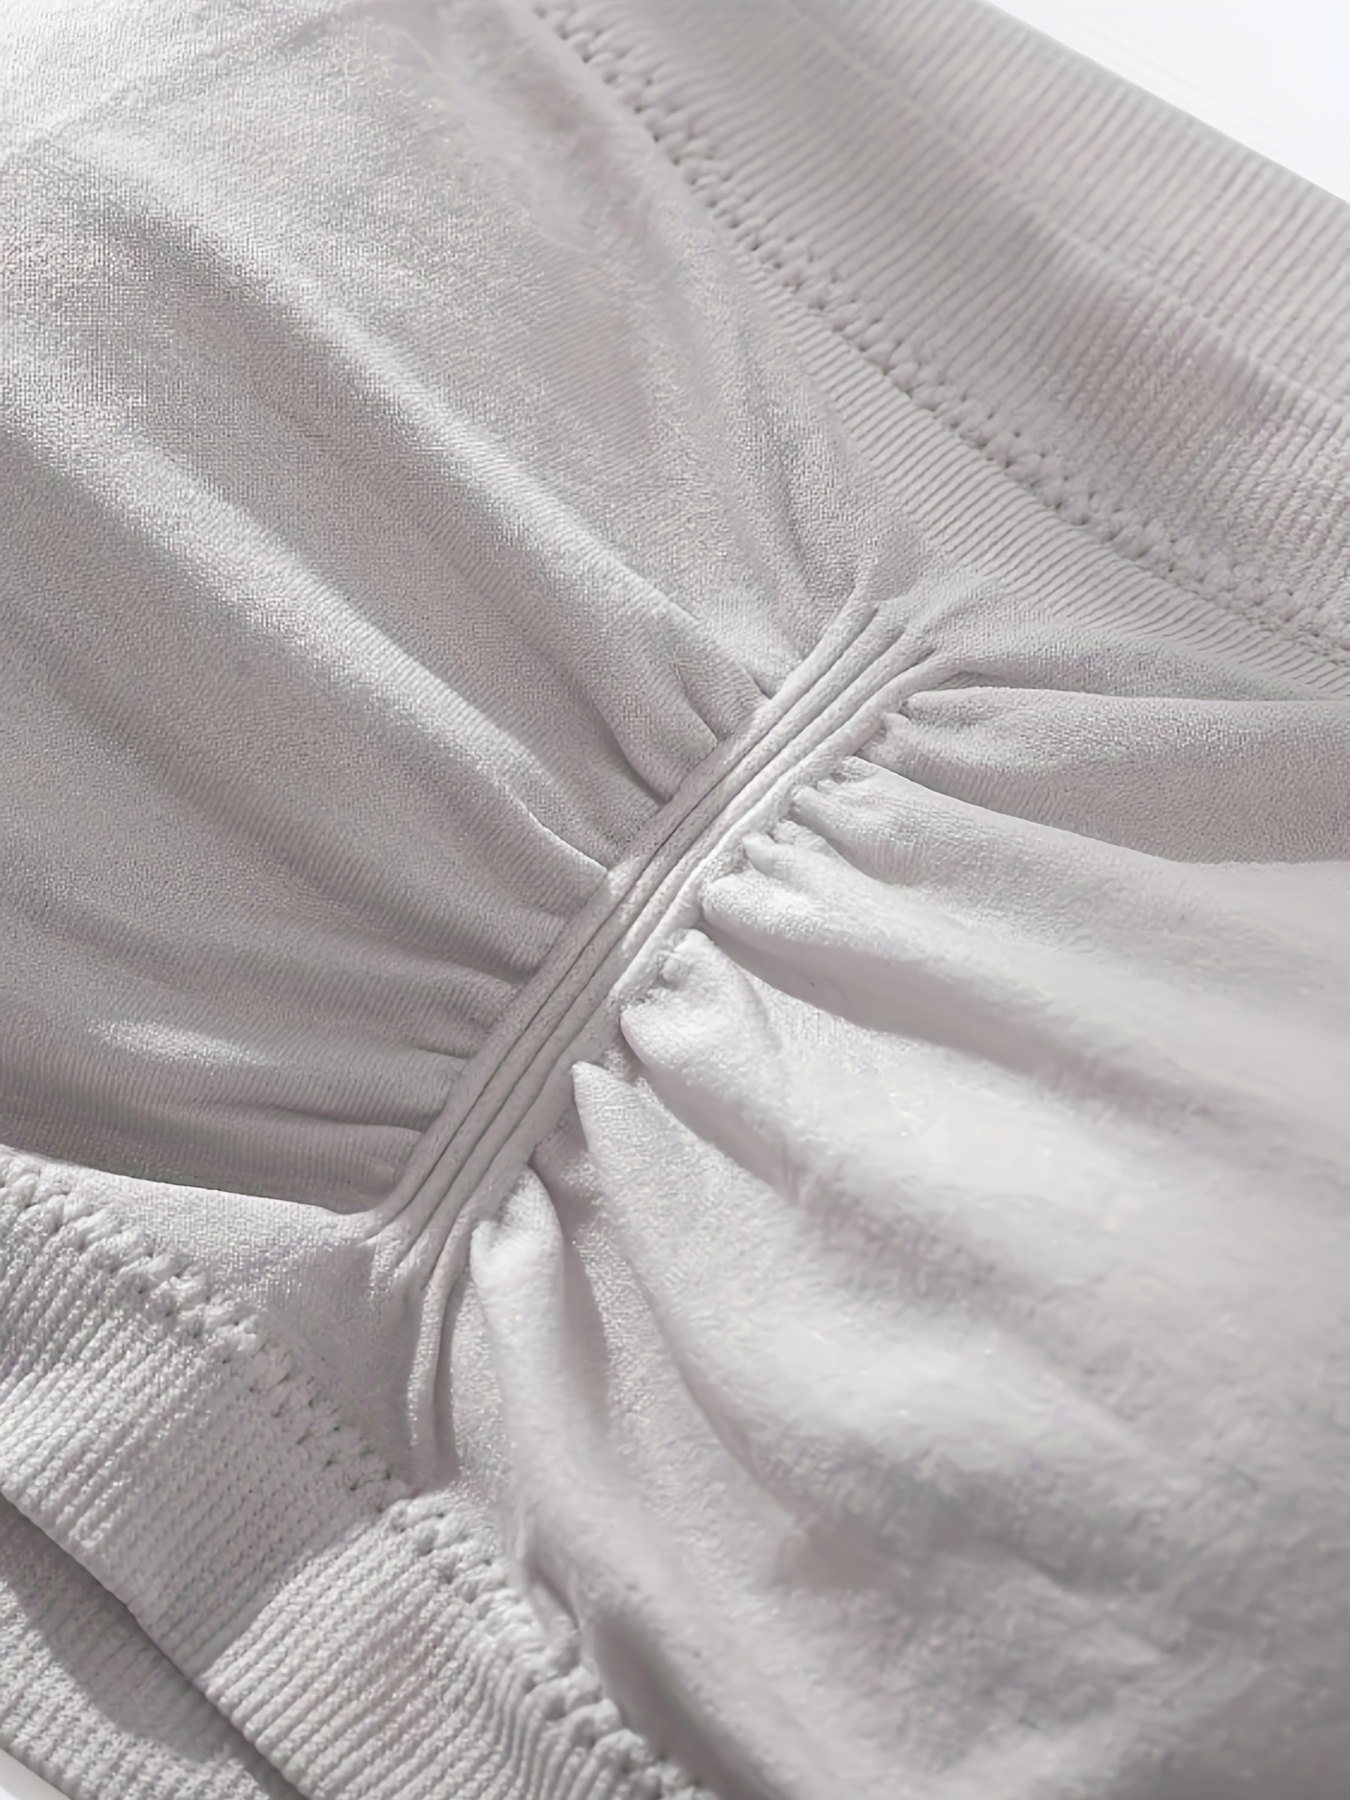 Womens White Bandeau Bras Bras - Underwear, Clothing